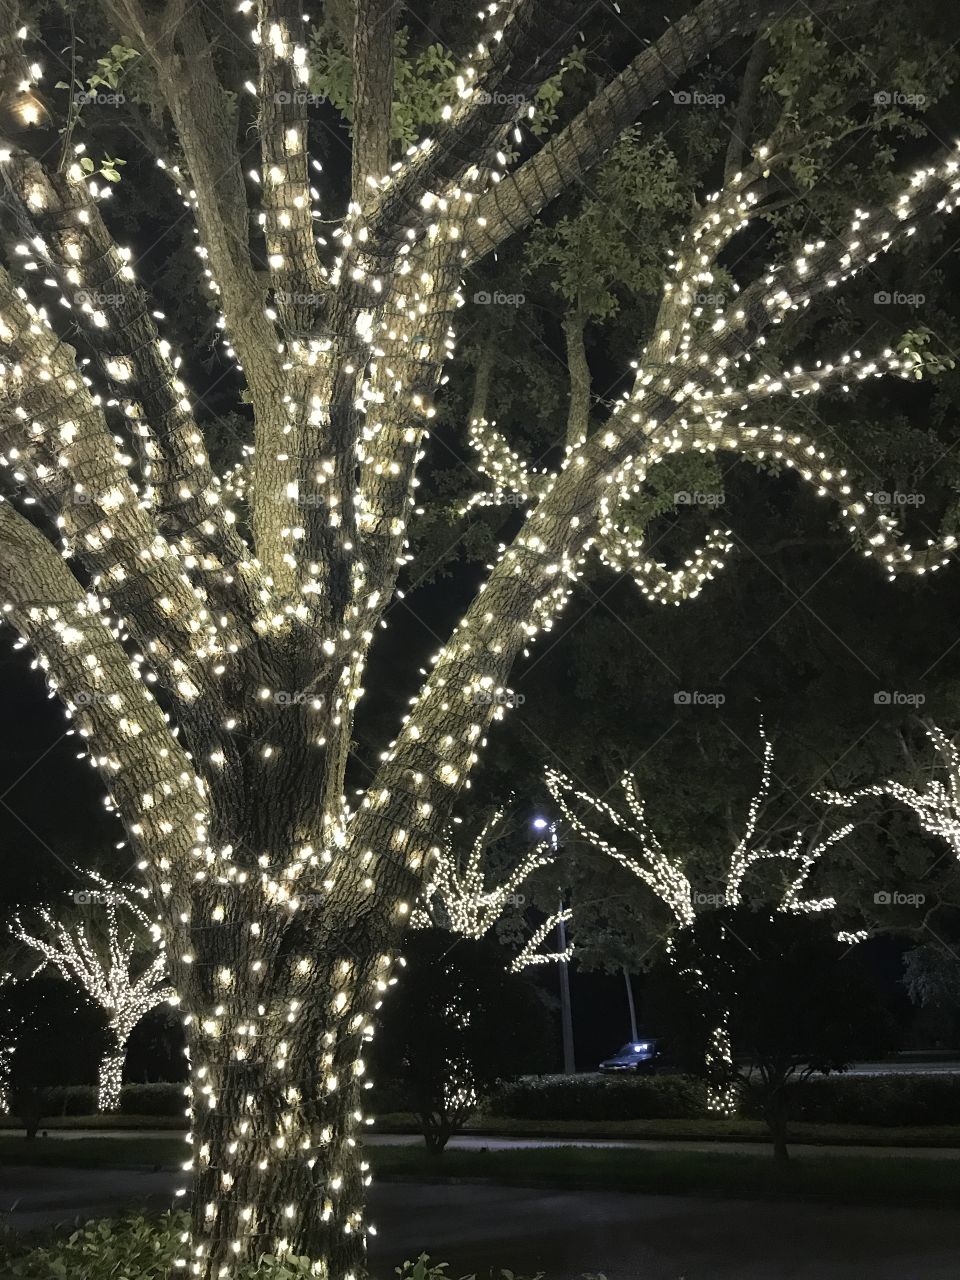 Tree lights 